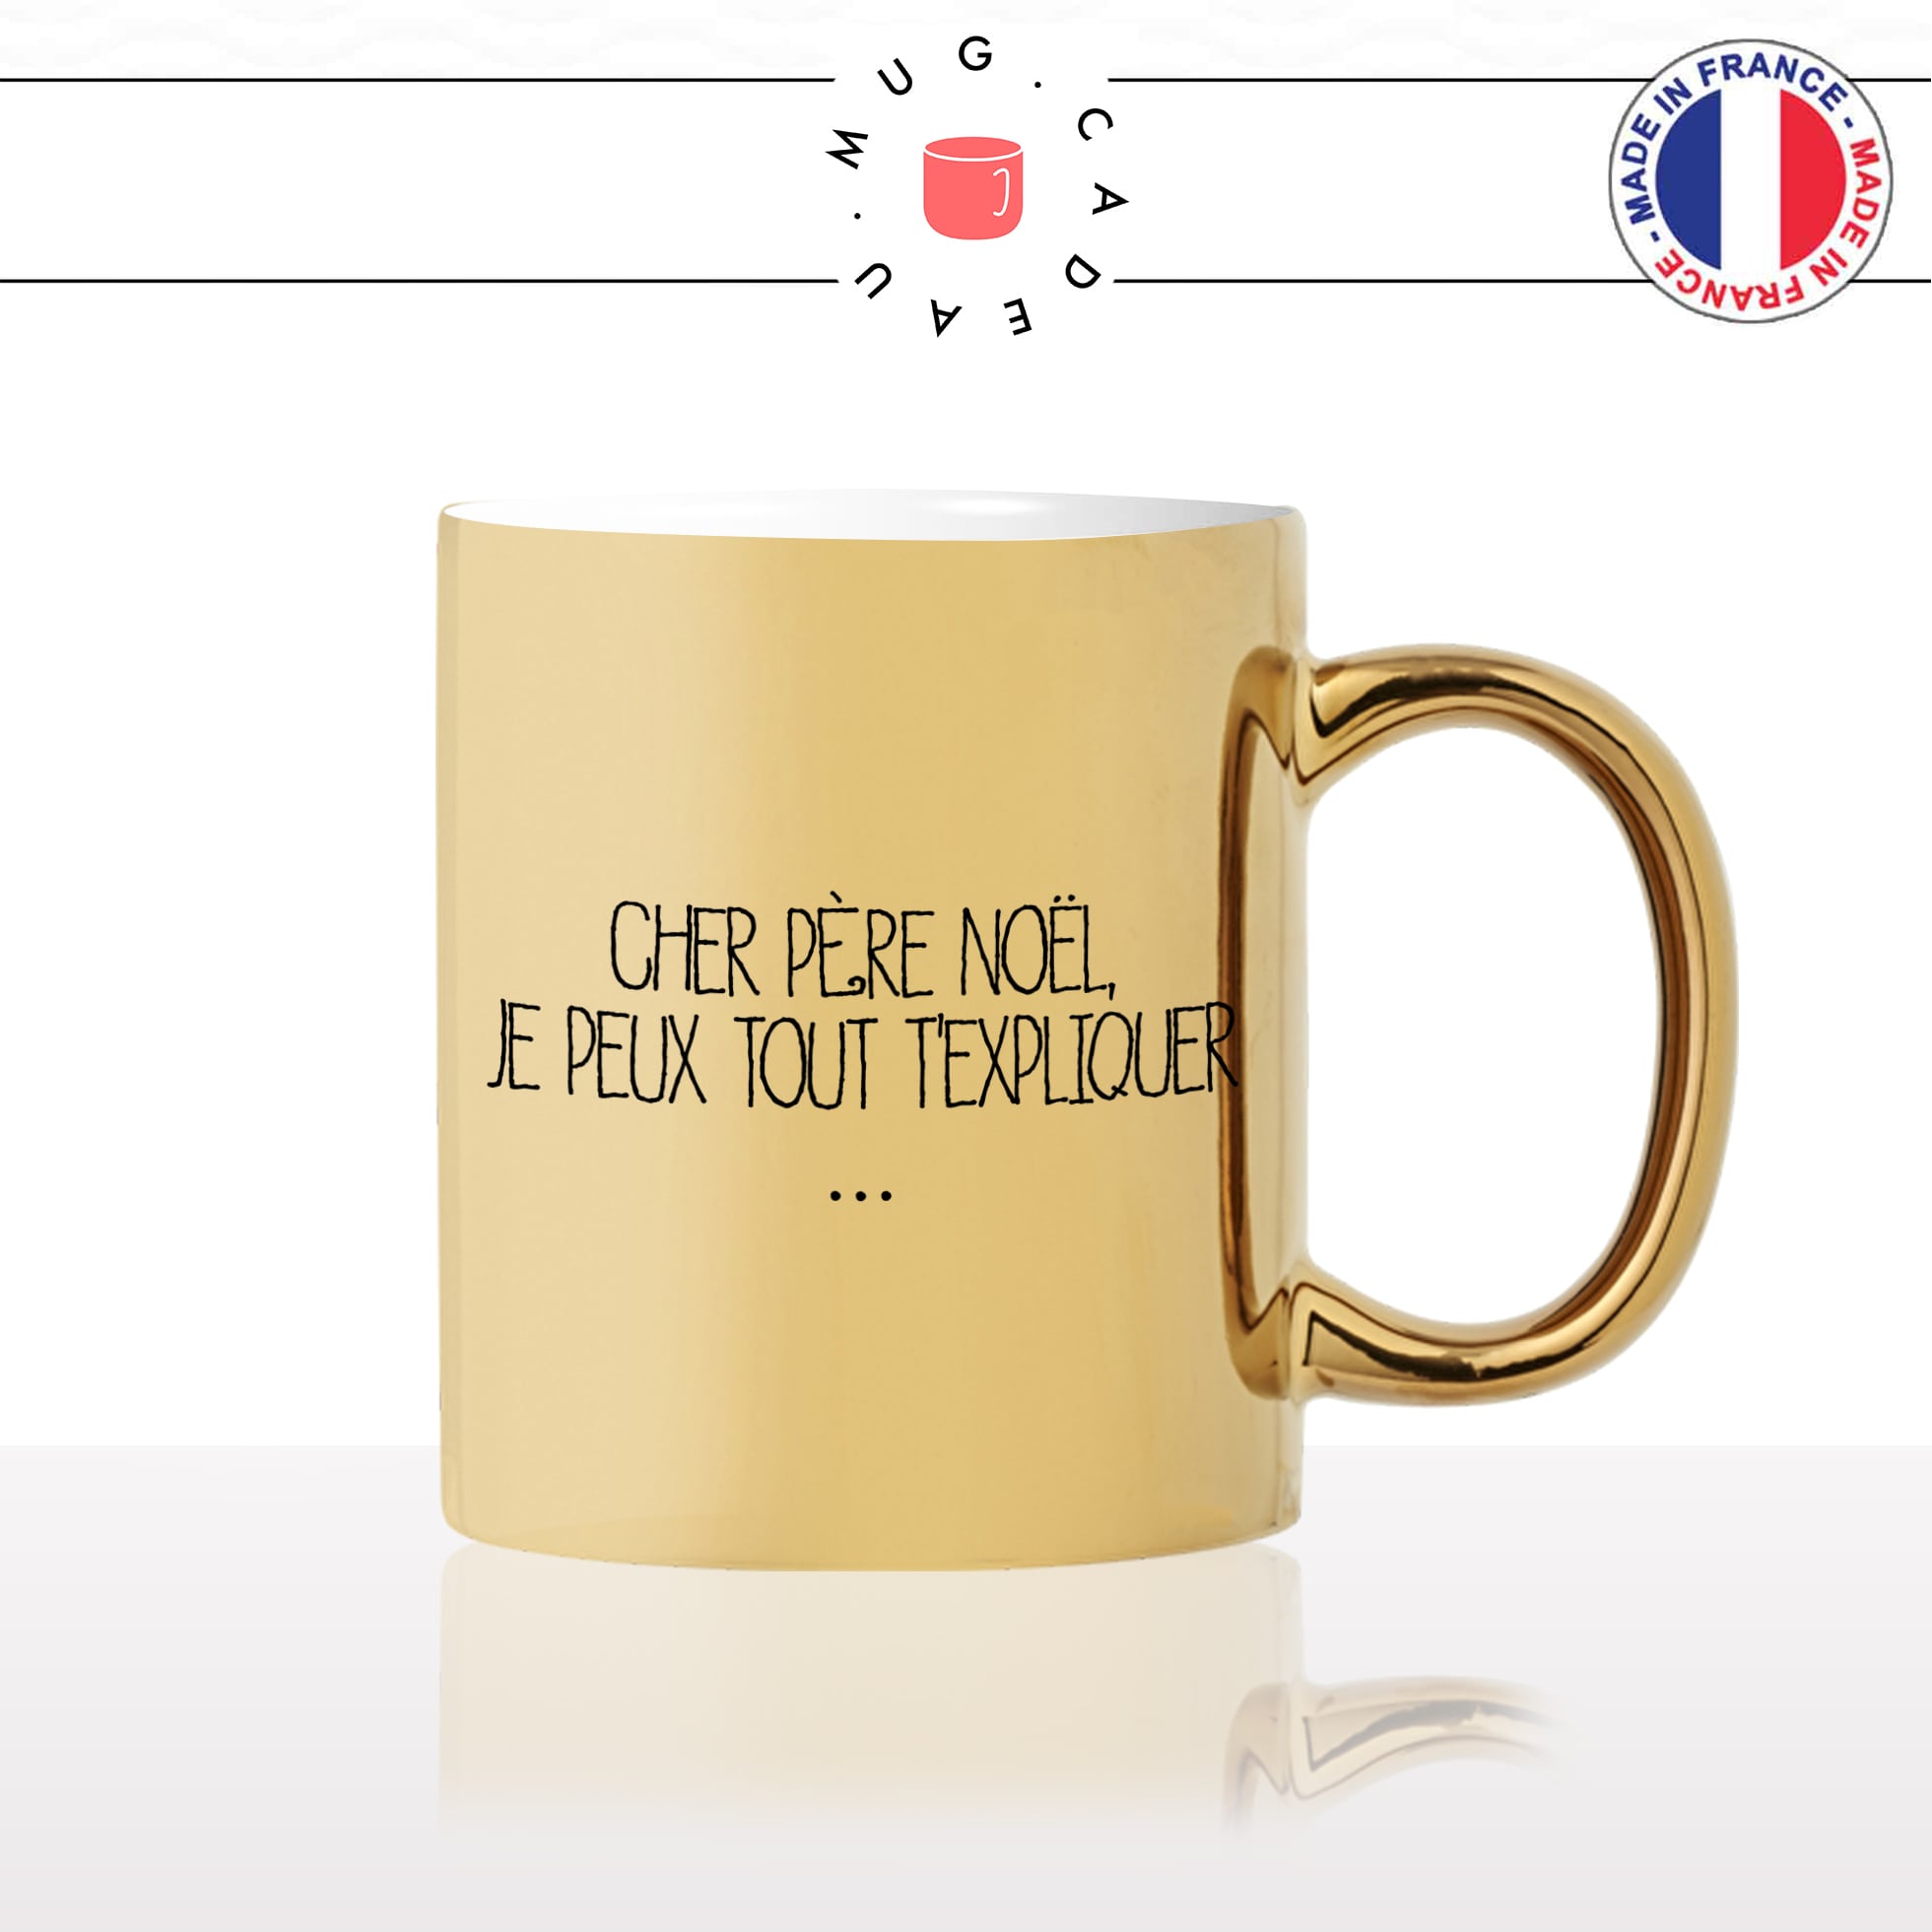 mug-tasse-gold-or-doré-cher-père-noel-je-peux-tout-texpliquer-hiver-chocolat-chaud-humour-original-fun-idée-cadeau-personnalisé-café-thé2-min